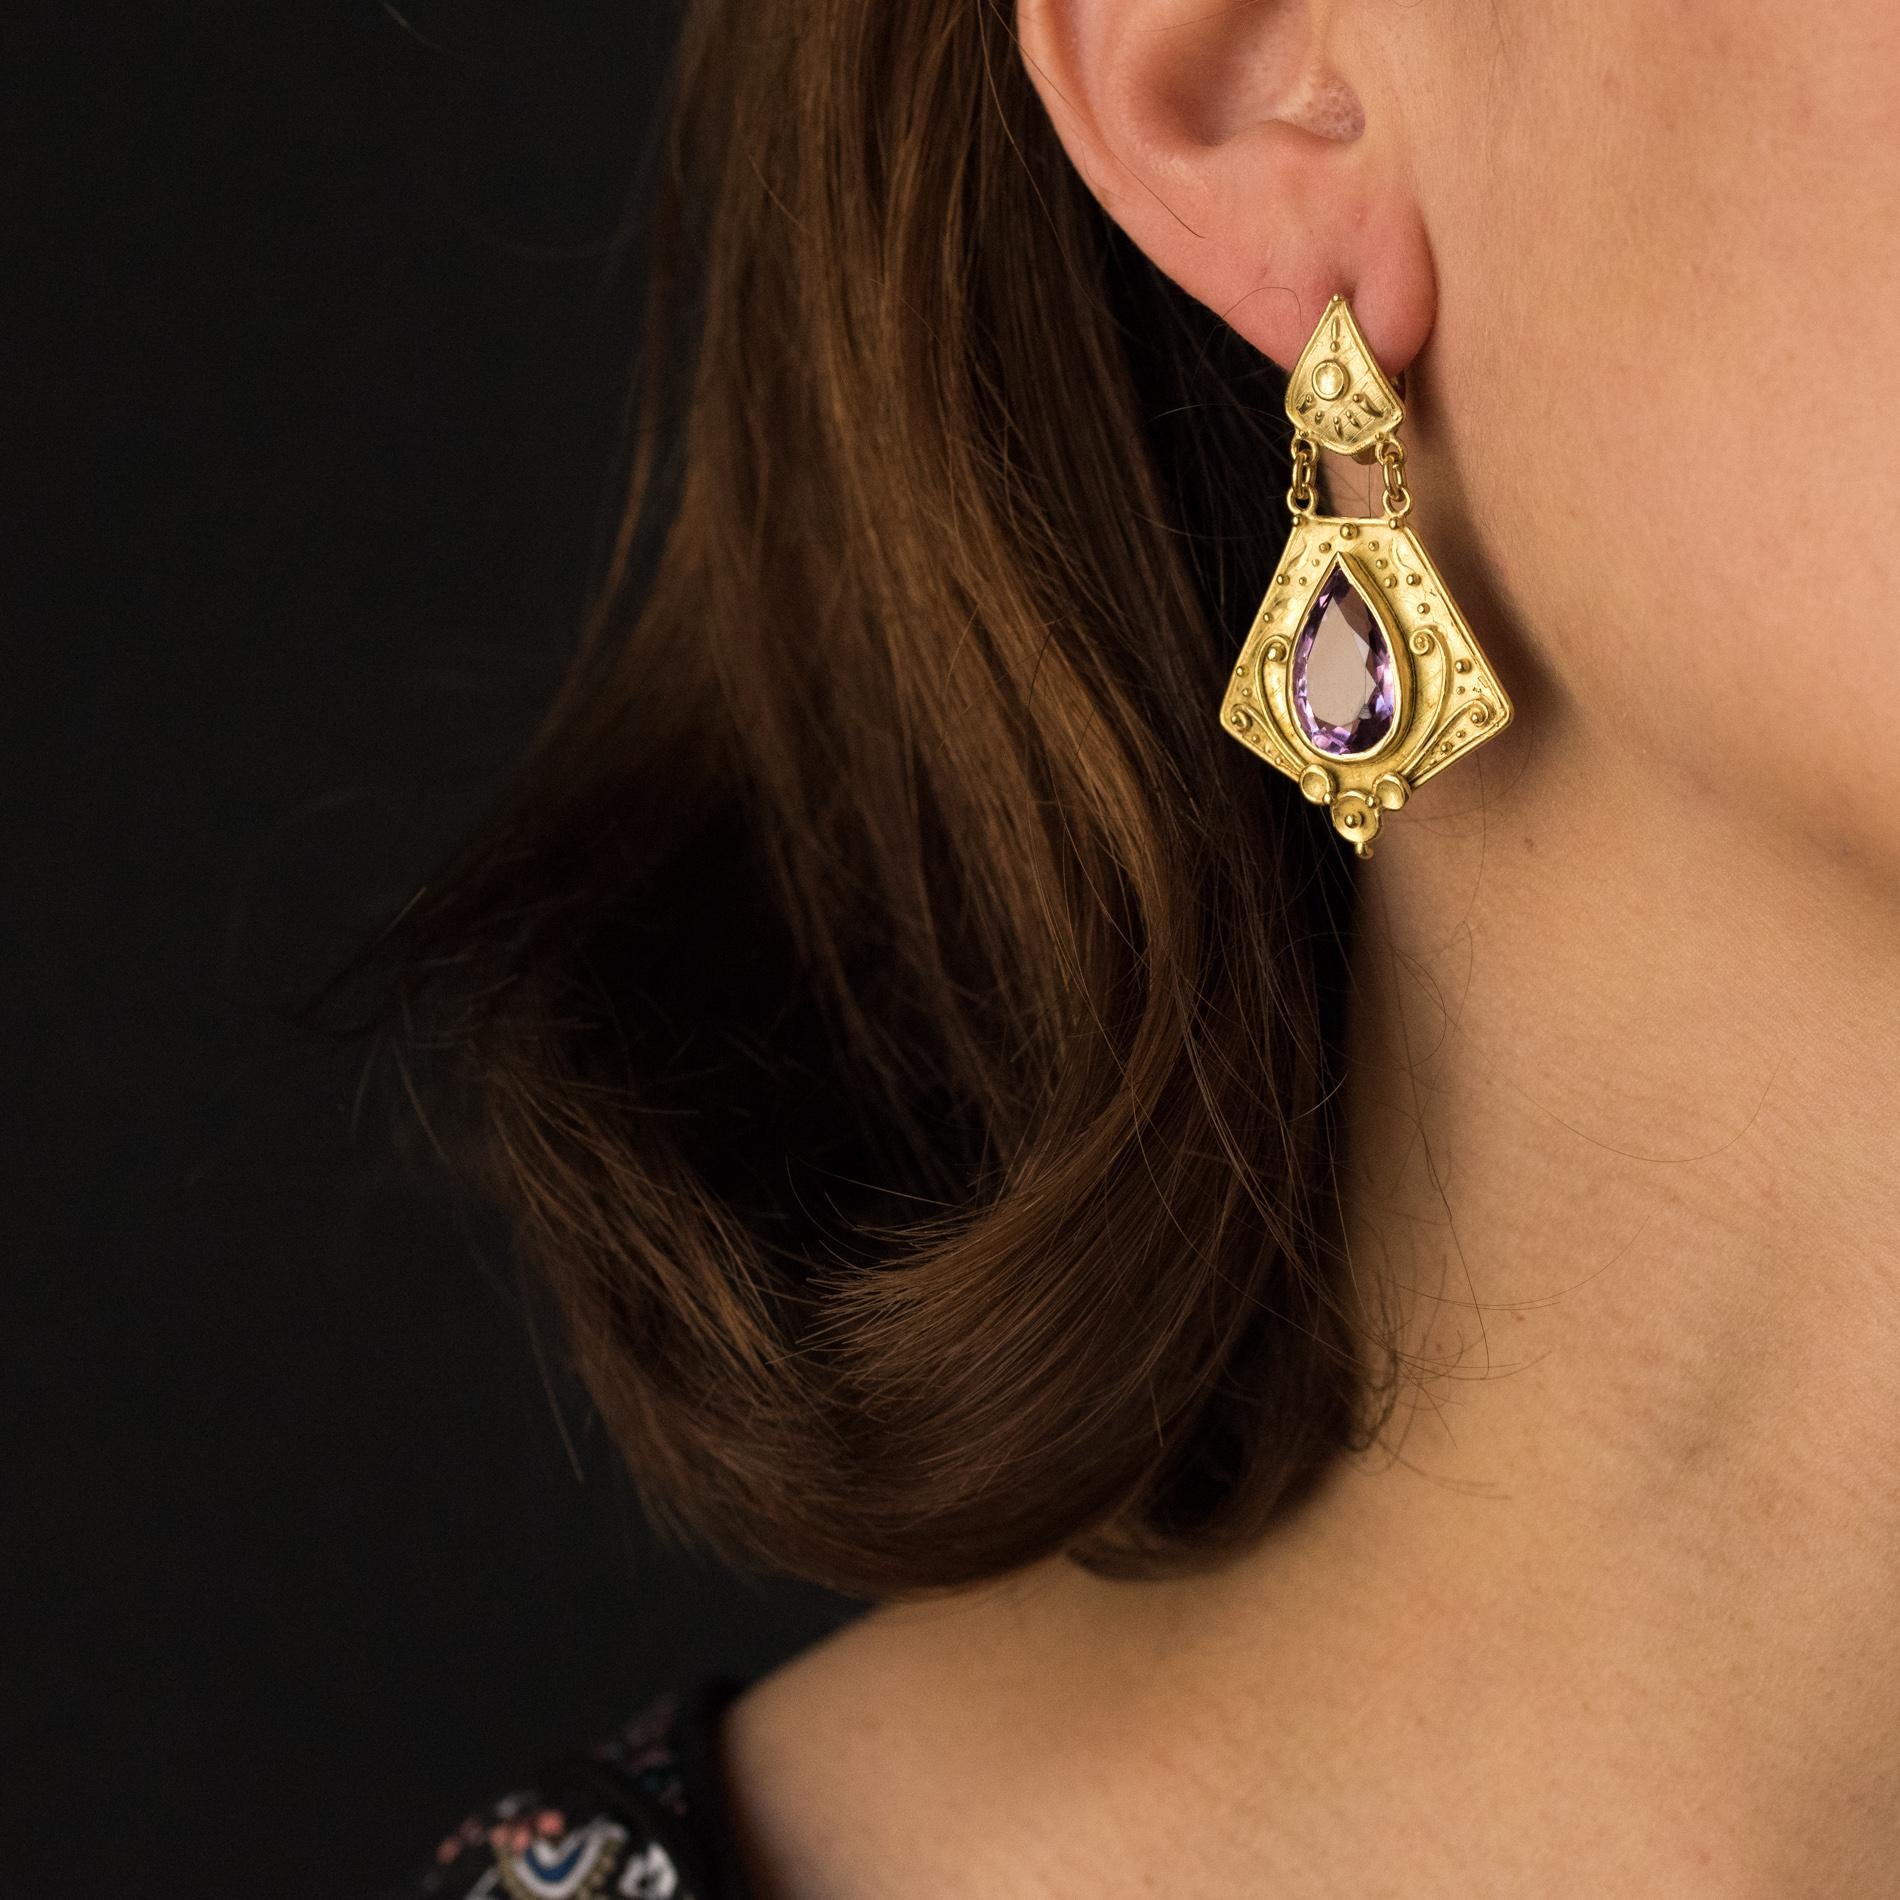 1960's style earrings